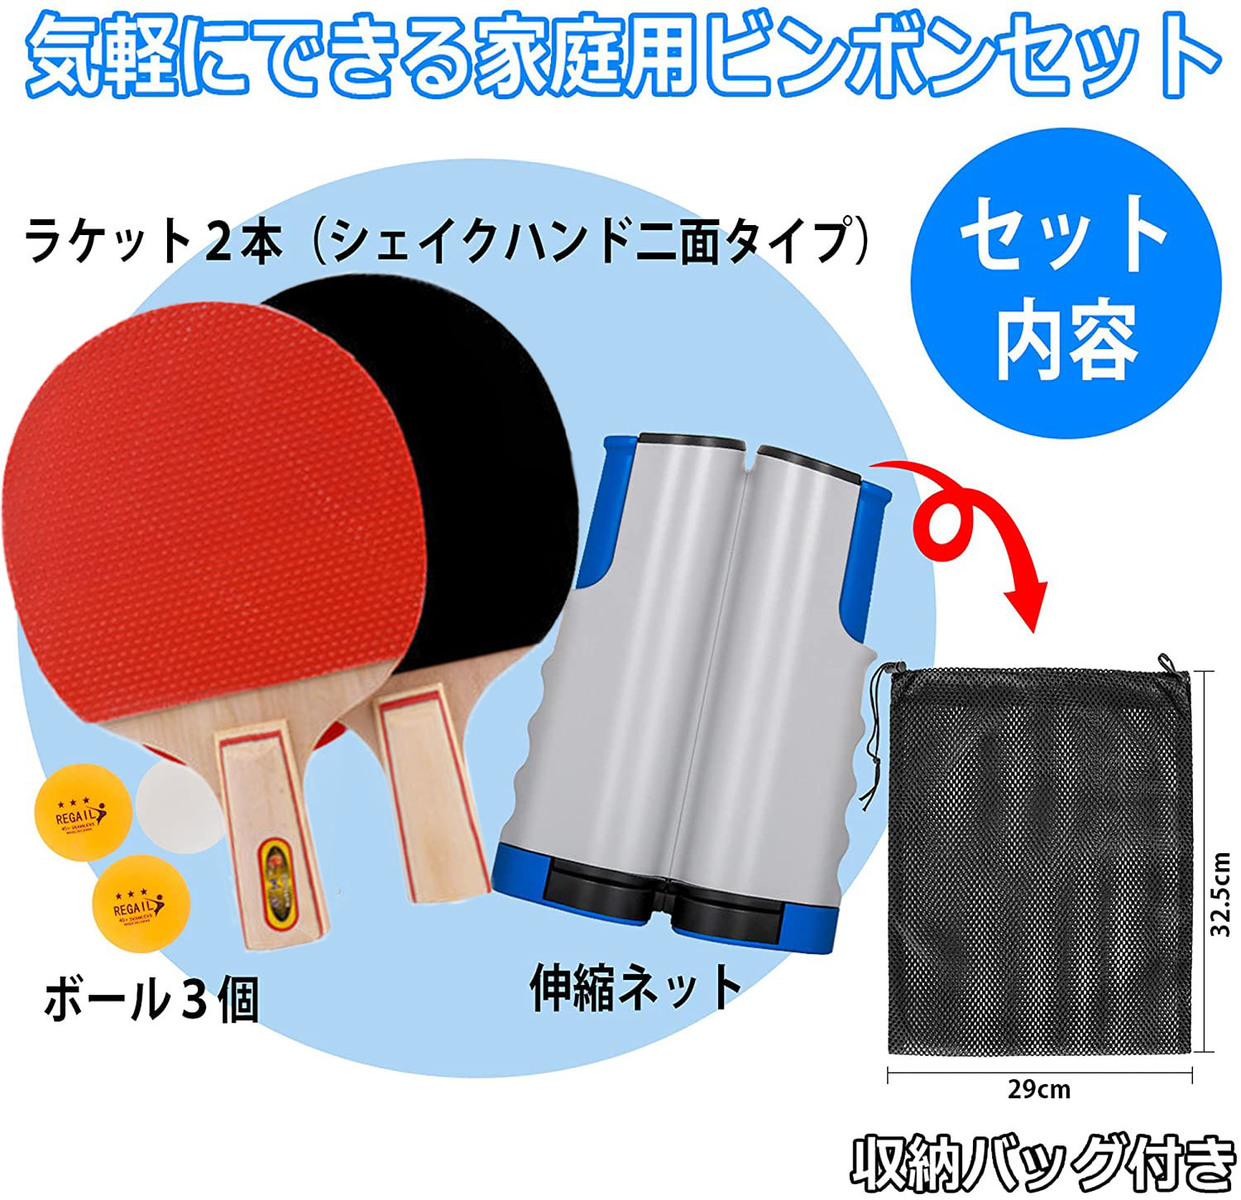 市場 卓球 ラケット2本 簡単設置 収納袋付き 卓球ネット セット ピンポン球3個 伸縮ネット 手軽 ラケット